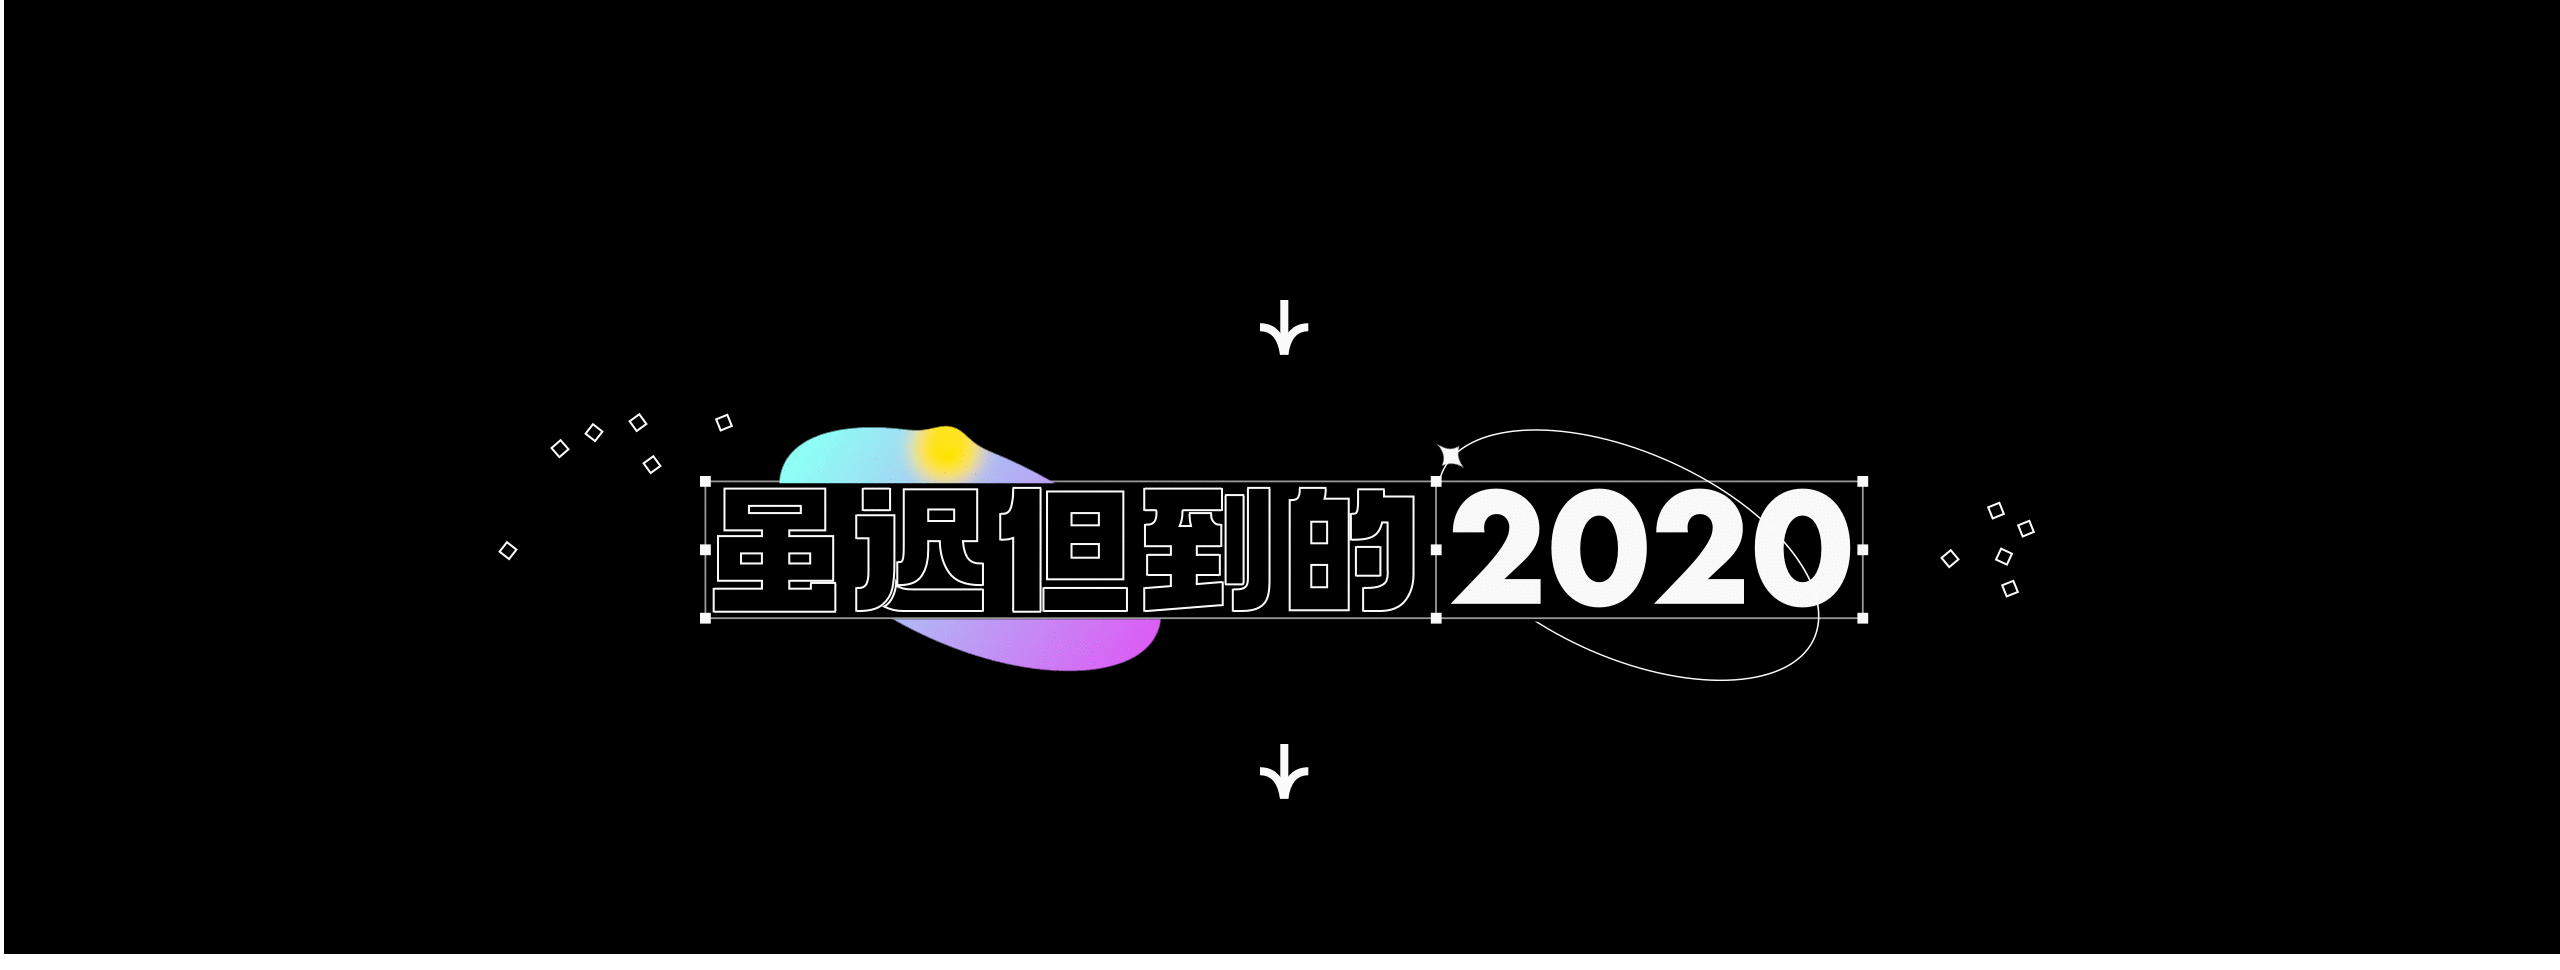 2020-2021 设计总结